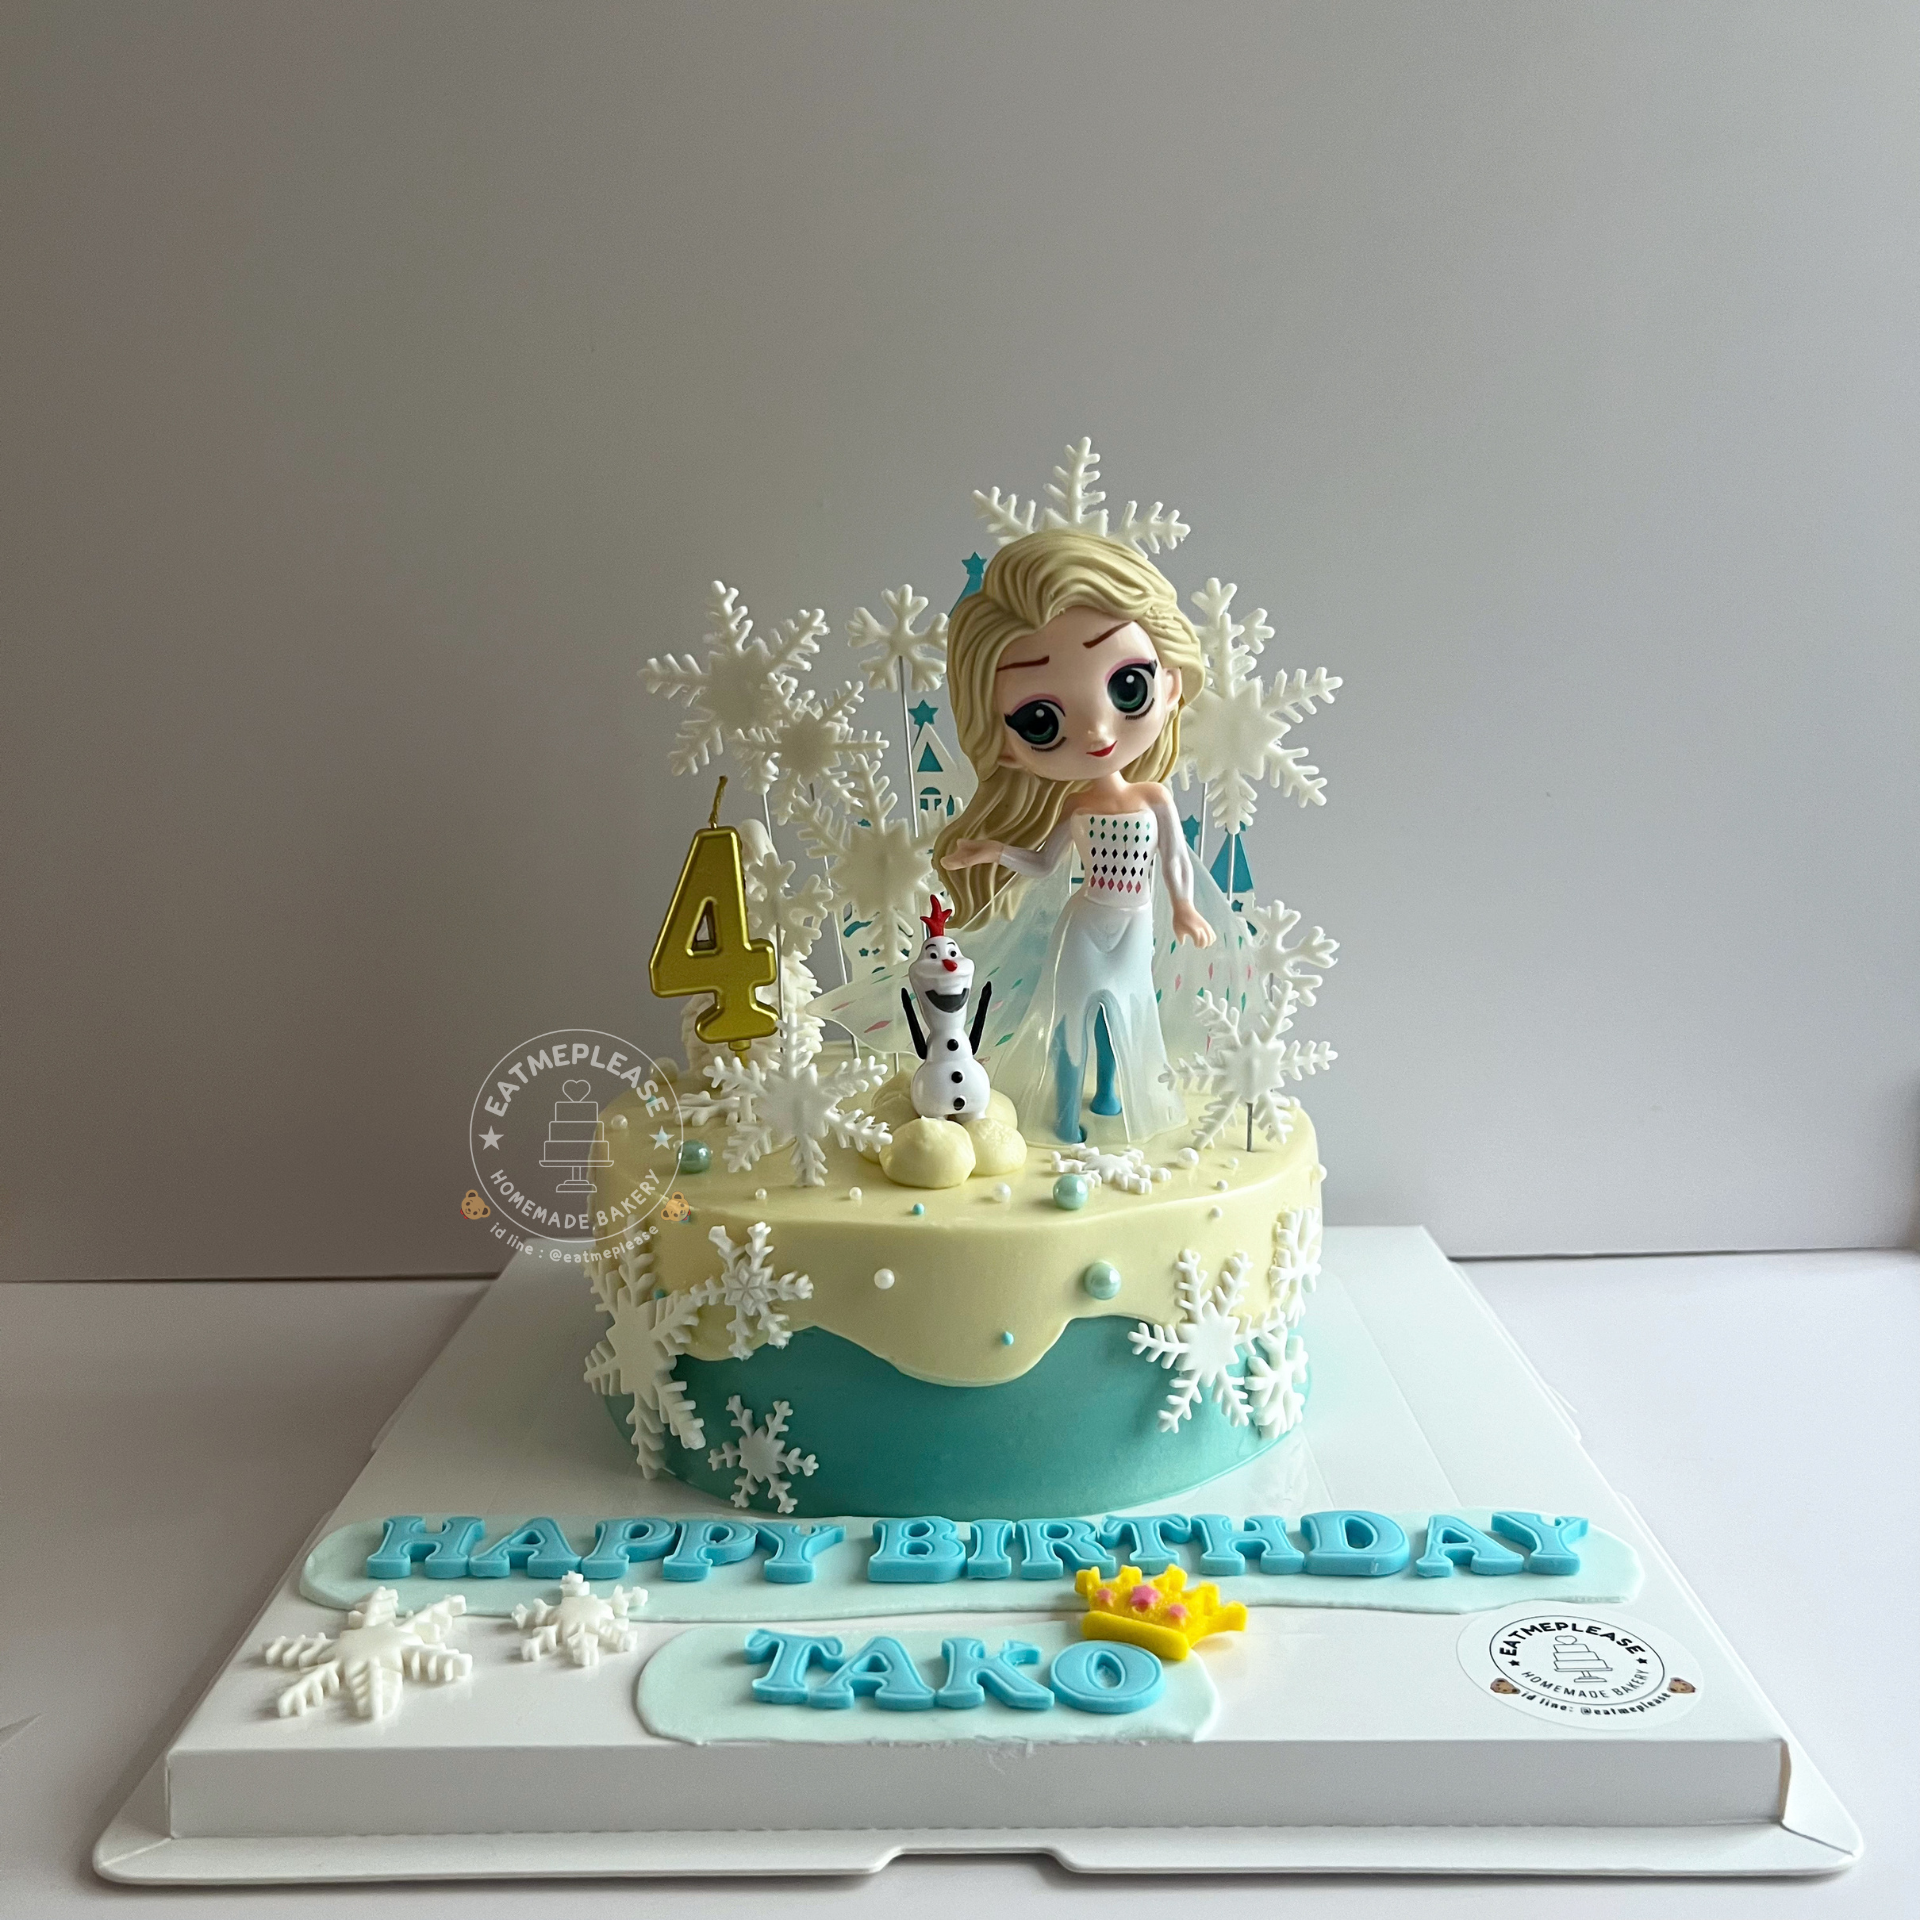 เค้กวันเกิดเจ้าหญิงเอลซ่า #เค้กเจ้าหญิง #เค้กเอลซ่า #Elsa #frozen